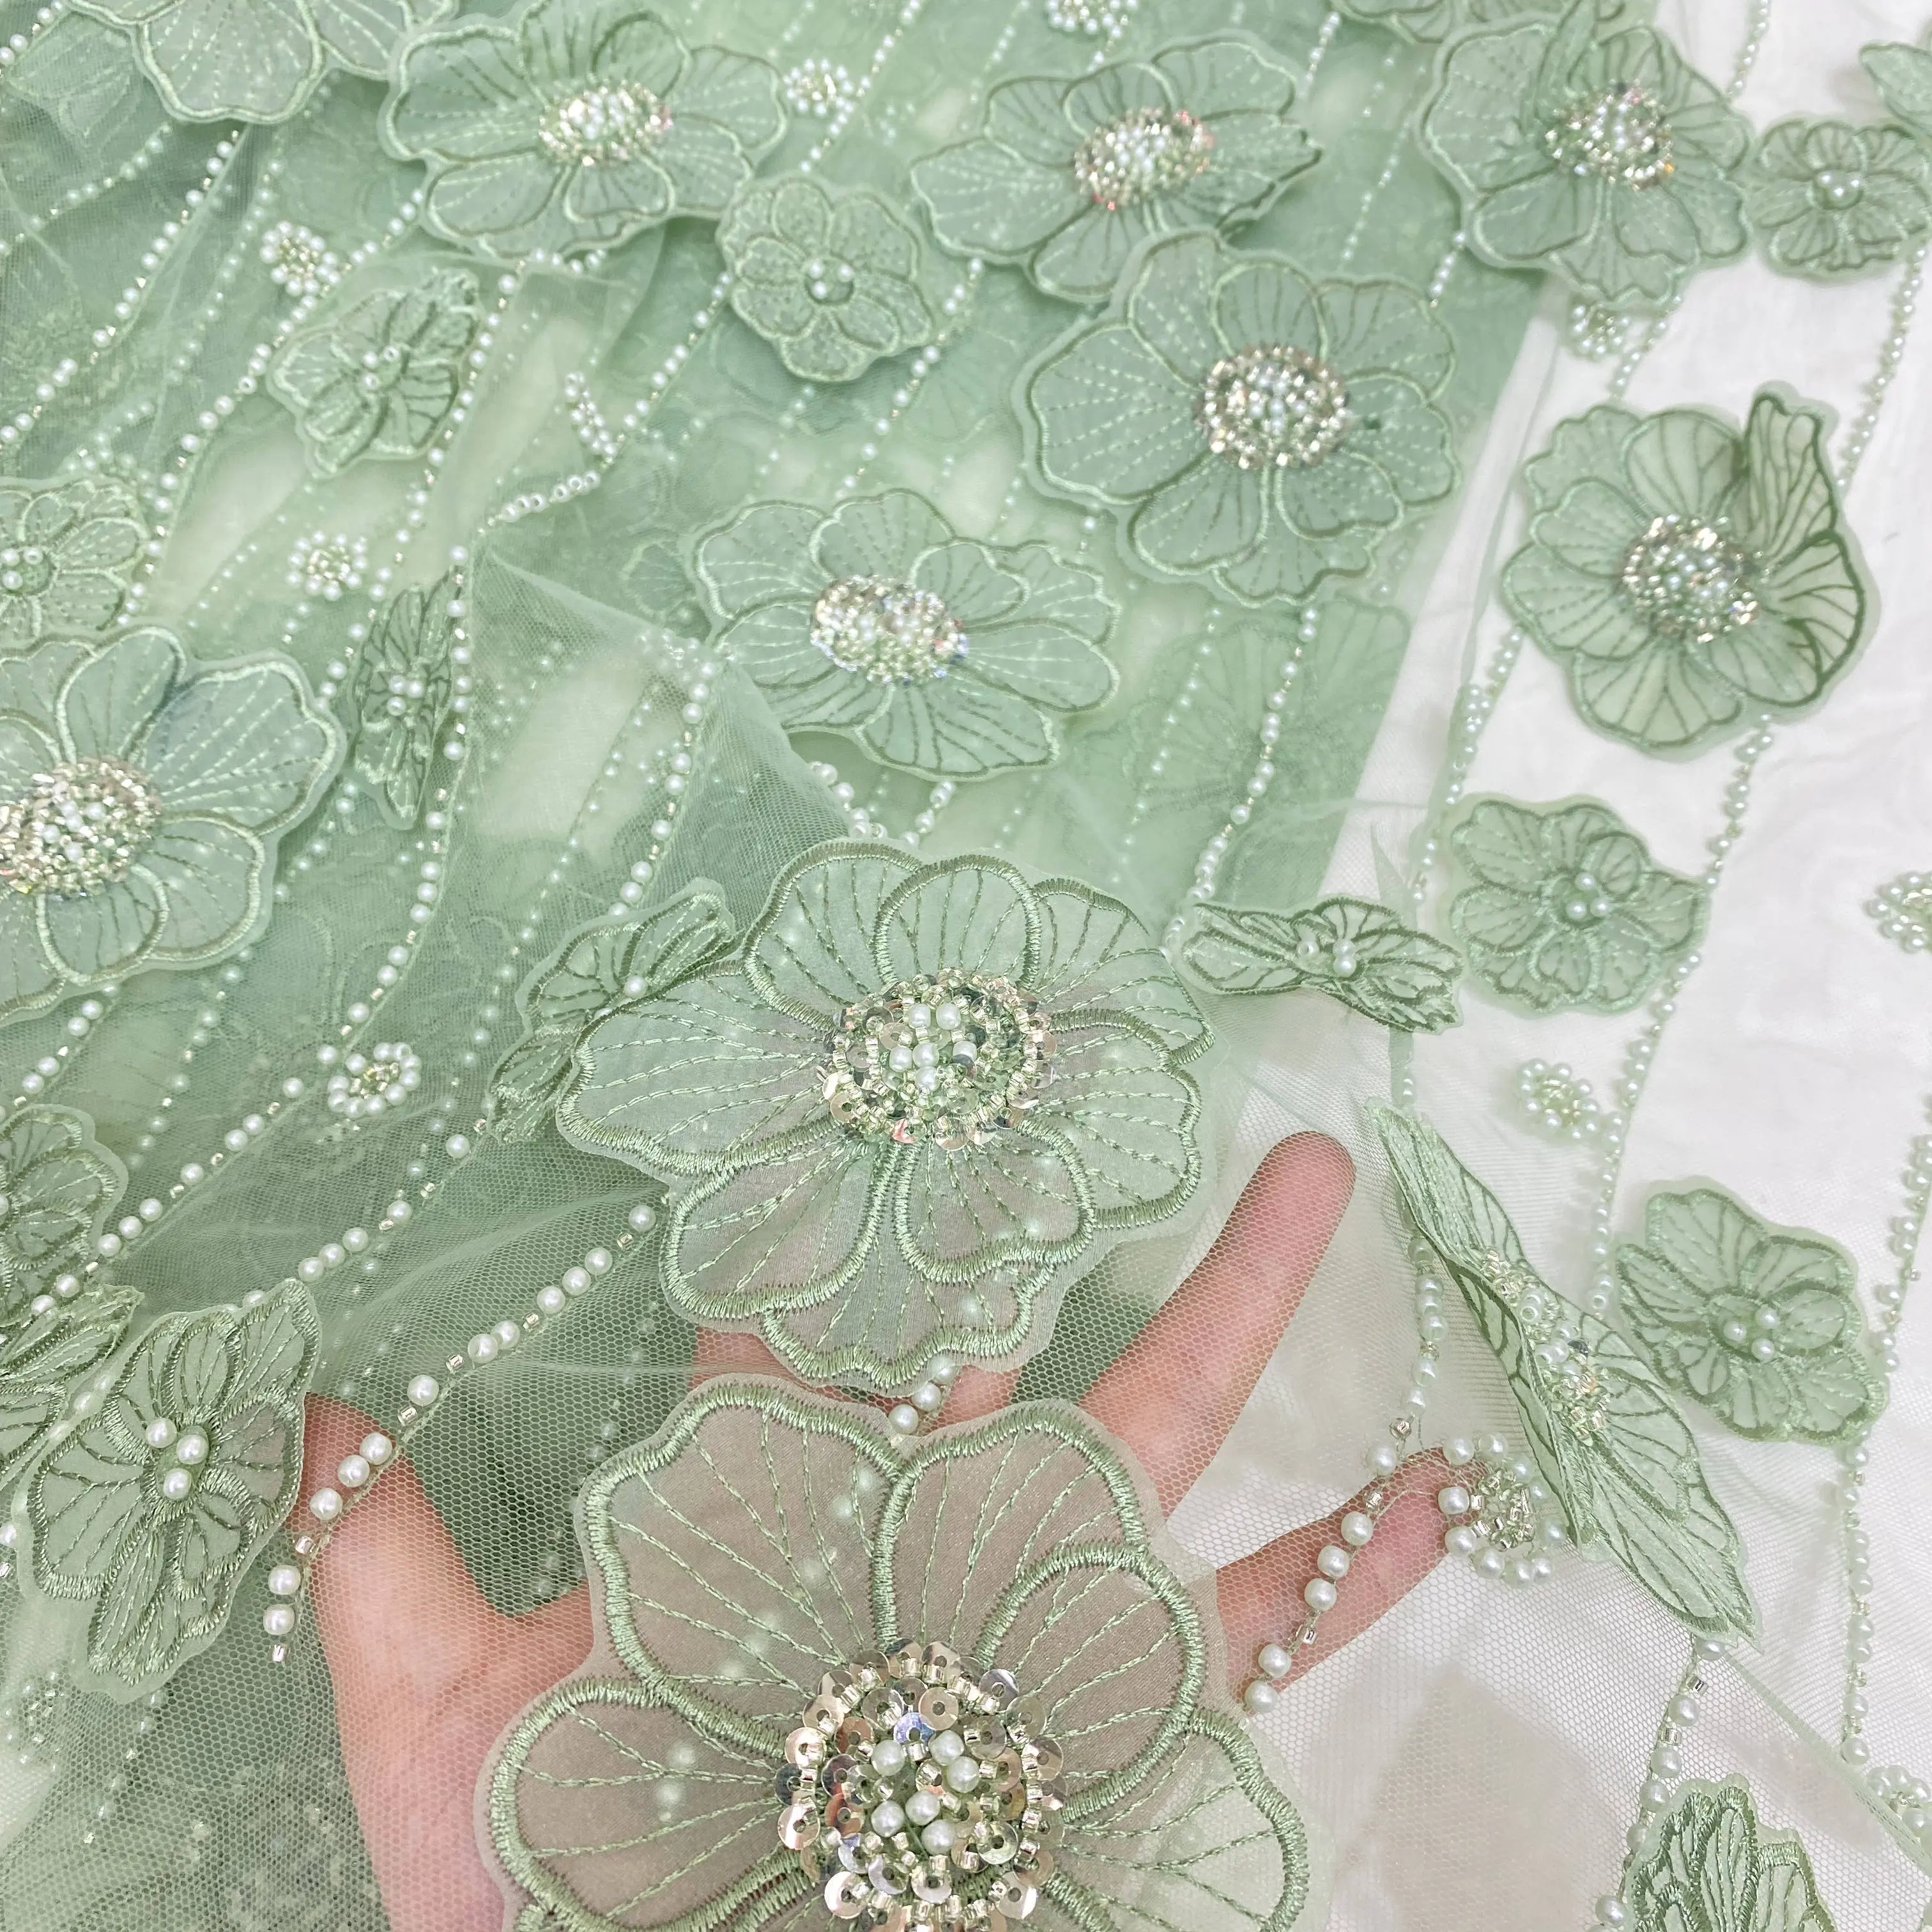 השמלות החדשות ביותר לנשים אלגנטיות מתפתל ירוק רקמה כבדה 3D פרח פניני חרוזים אפליקציית תחרה כלה צרפתית בד תחרה